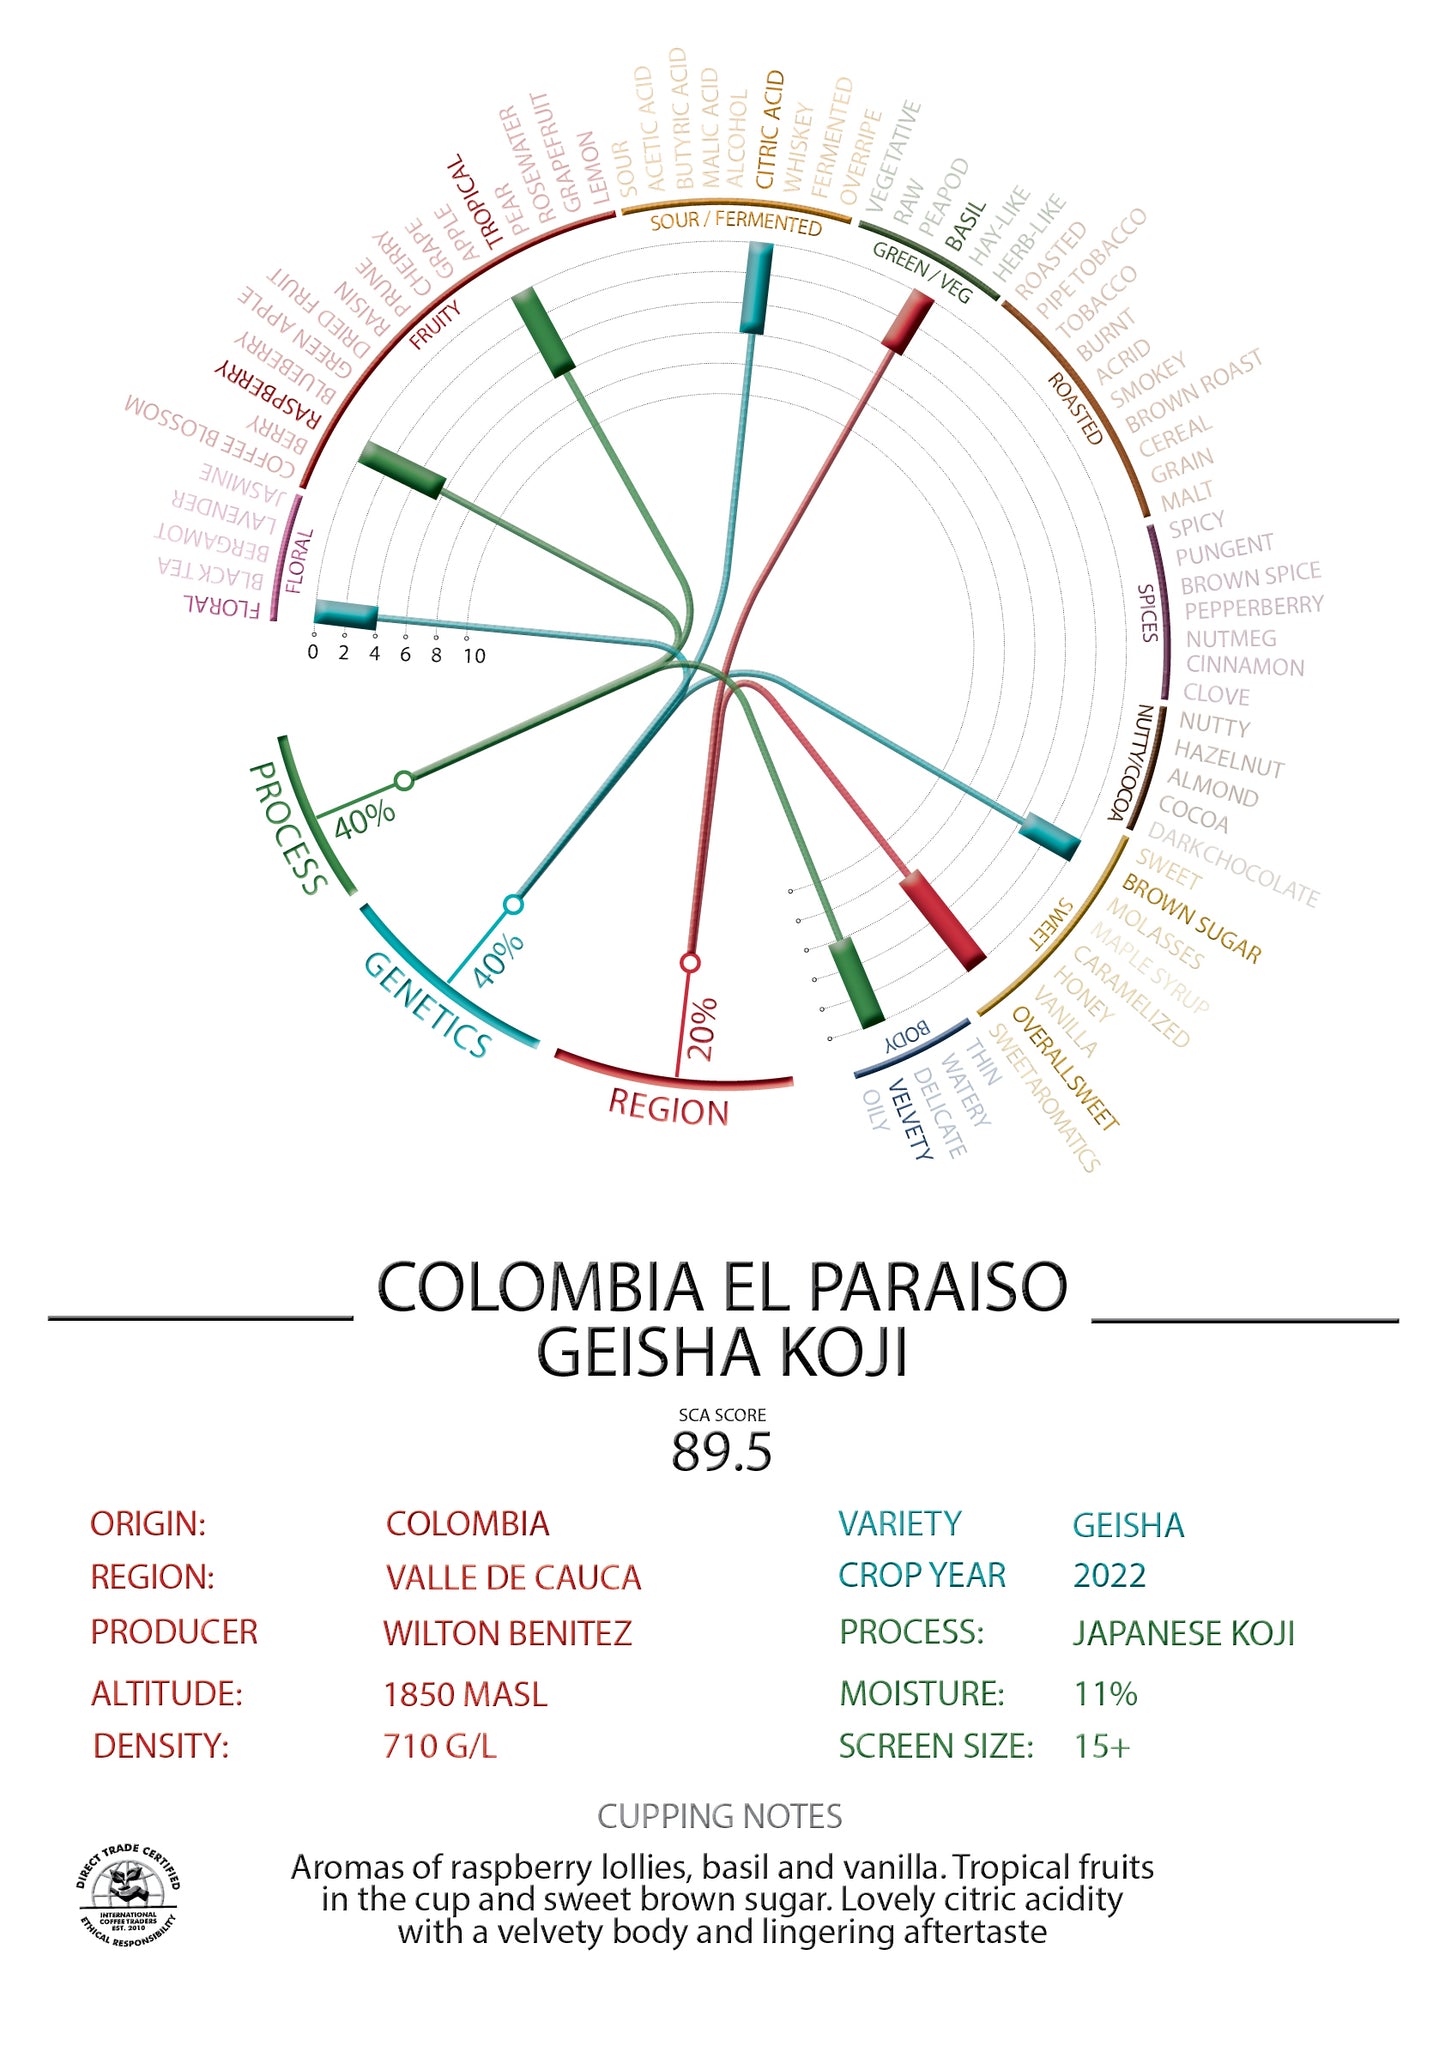 Colombia - Finca El Paraiso 92 - "Geisha" Koji